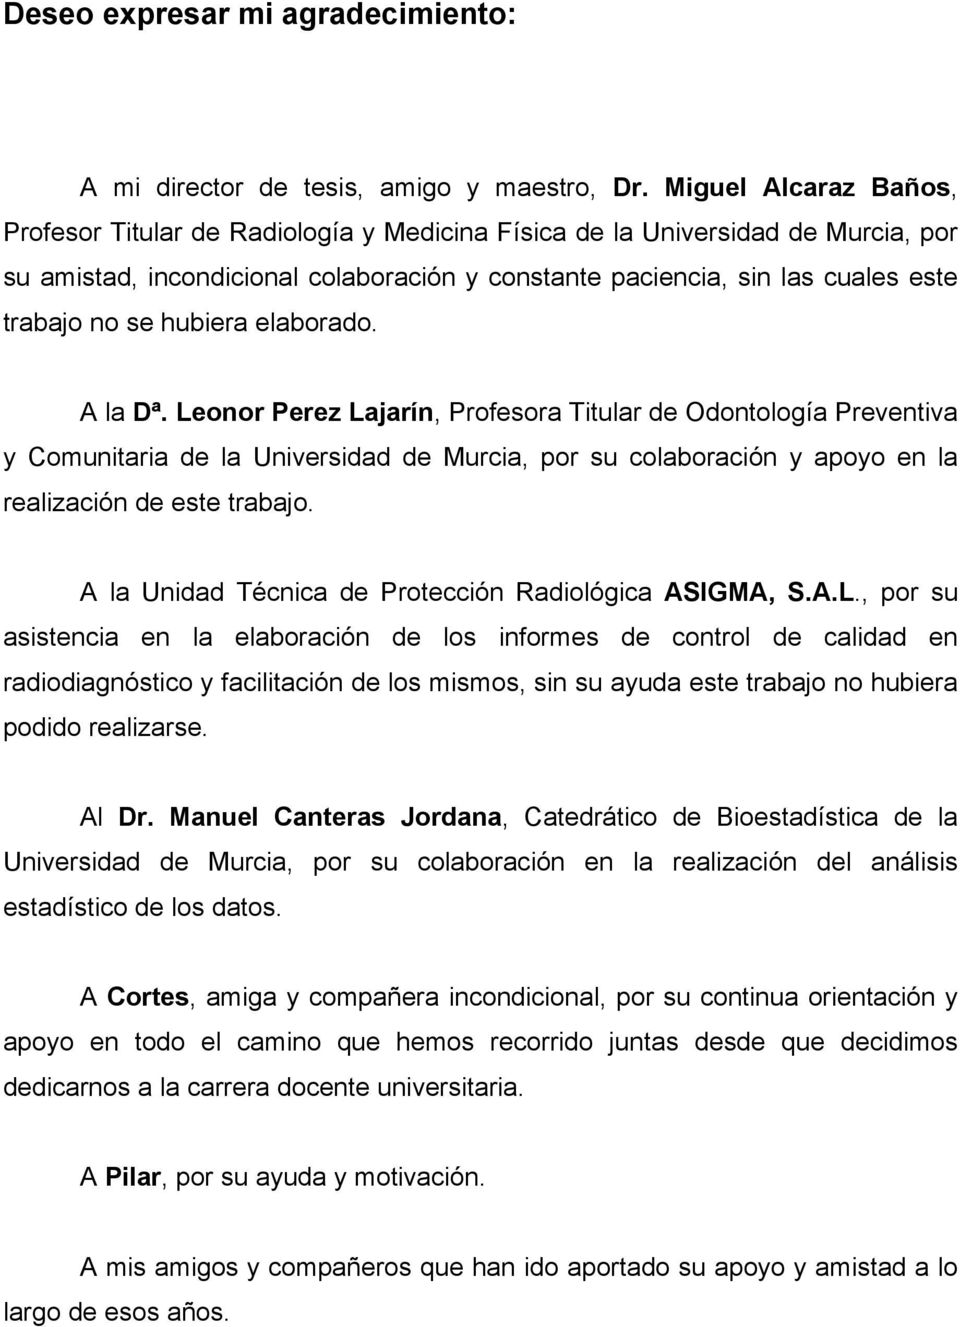 hubiera elaborado. A la Dª. Leonor Perez Lajarín, Profesora Titular de Odontología Preventiva y Comunitaria de la Universidad de Murcia, por su colaboración y apoyo en la realización de este trabajo.